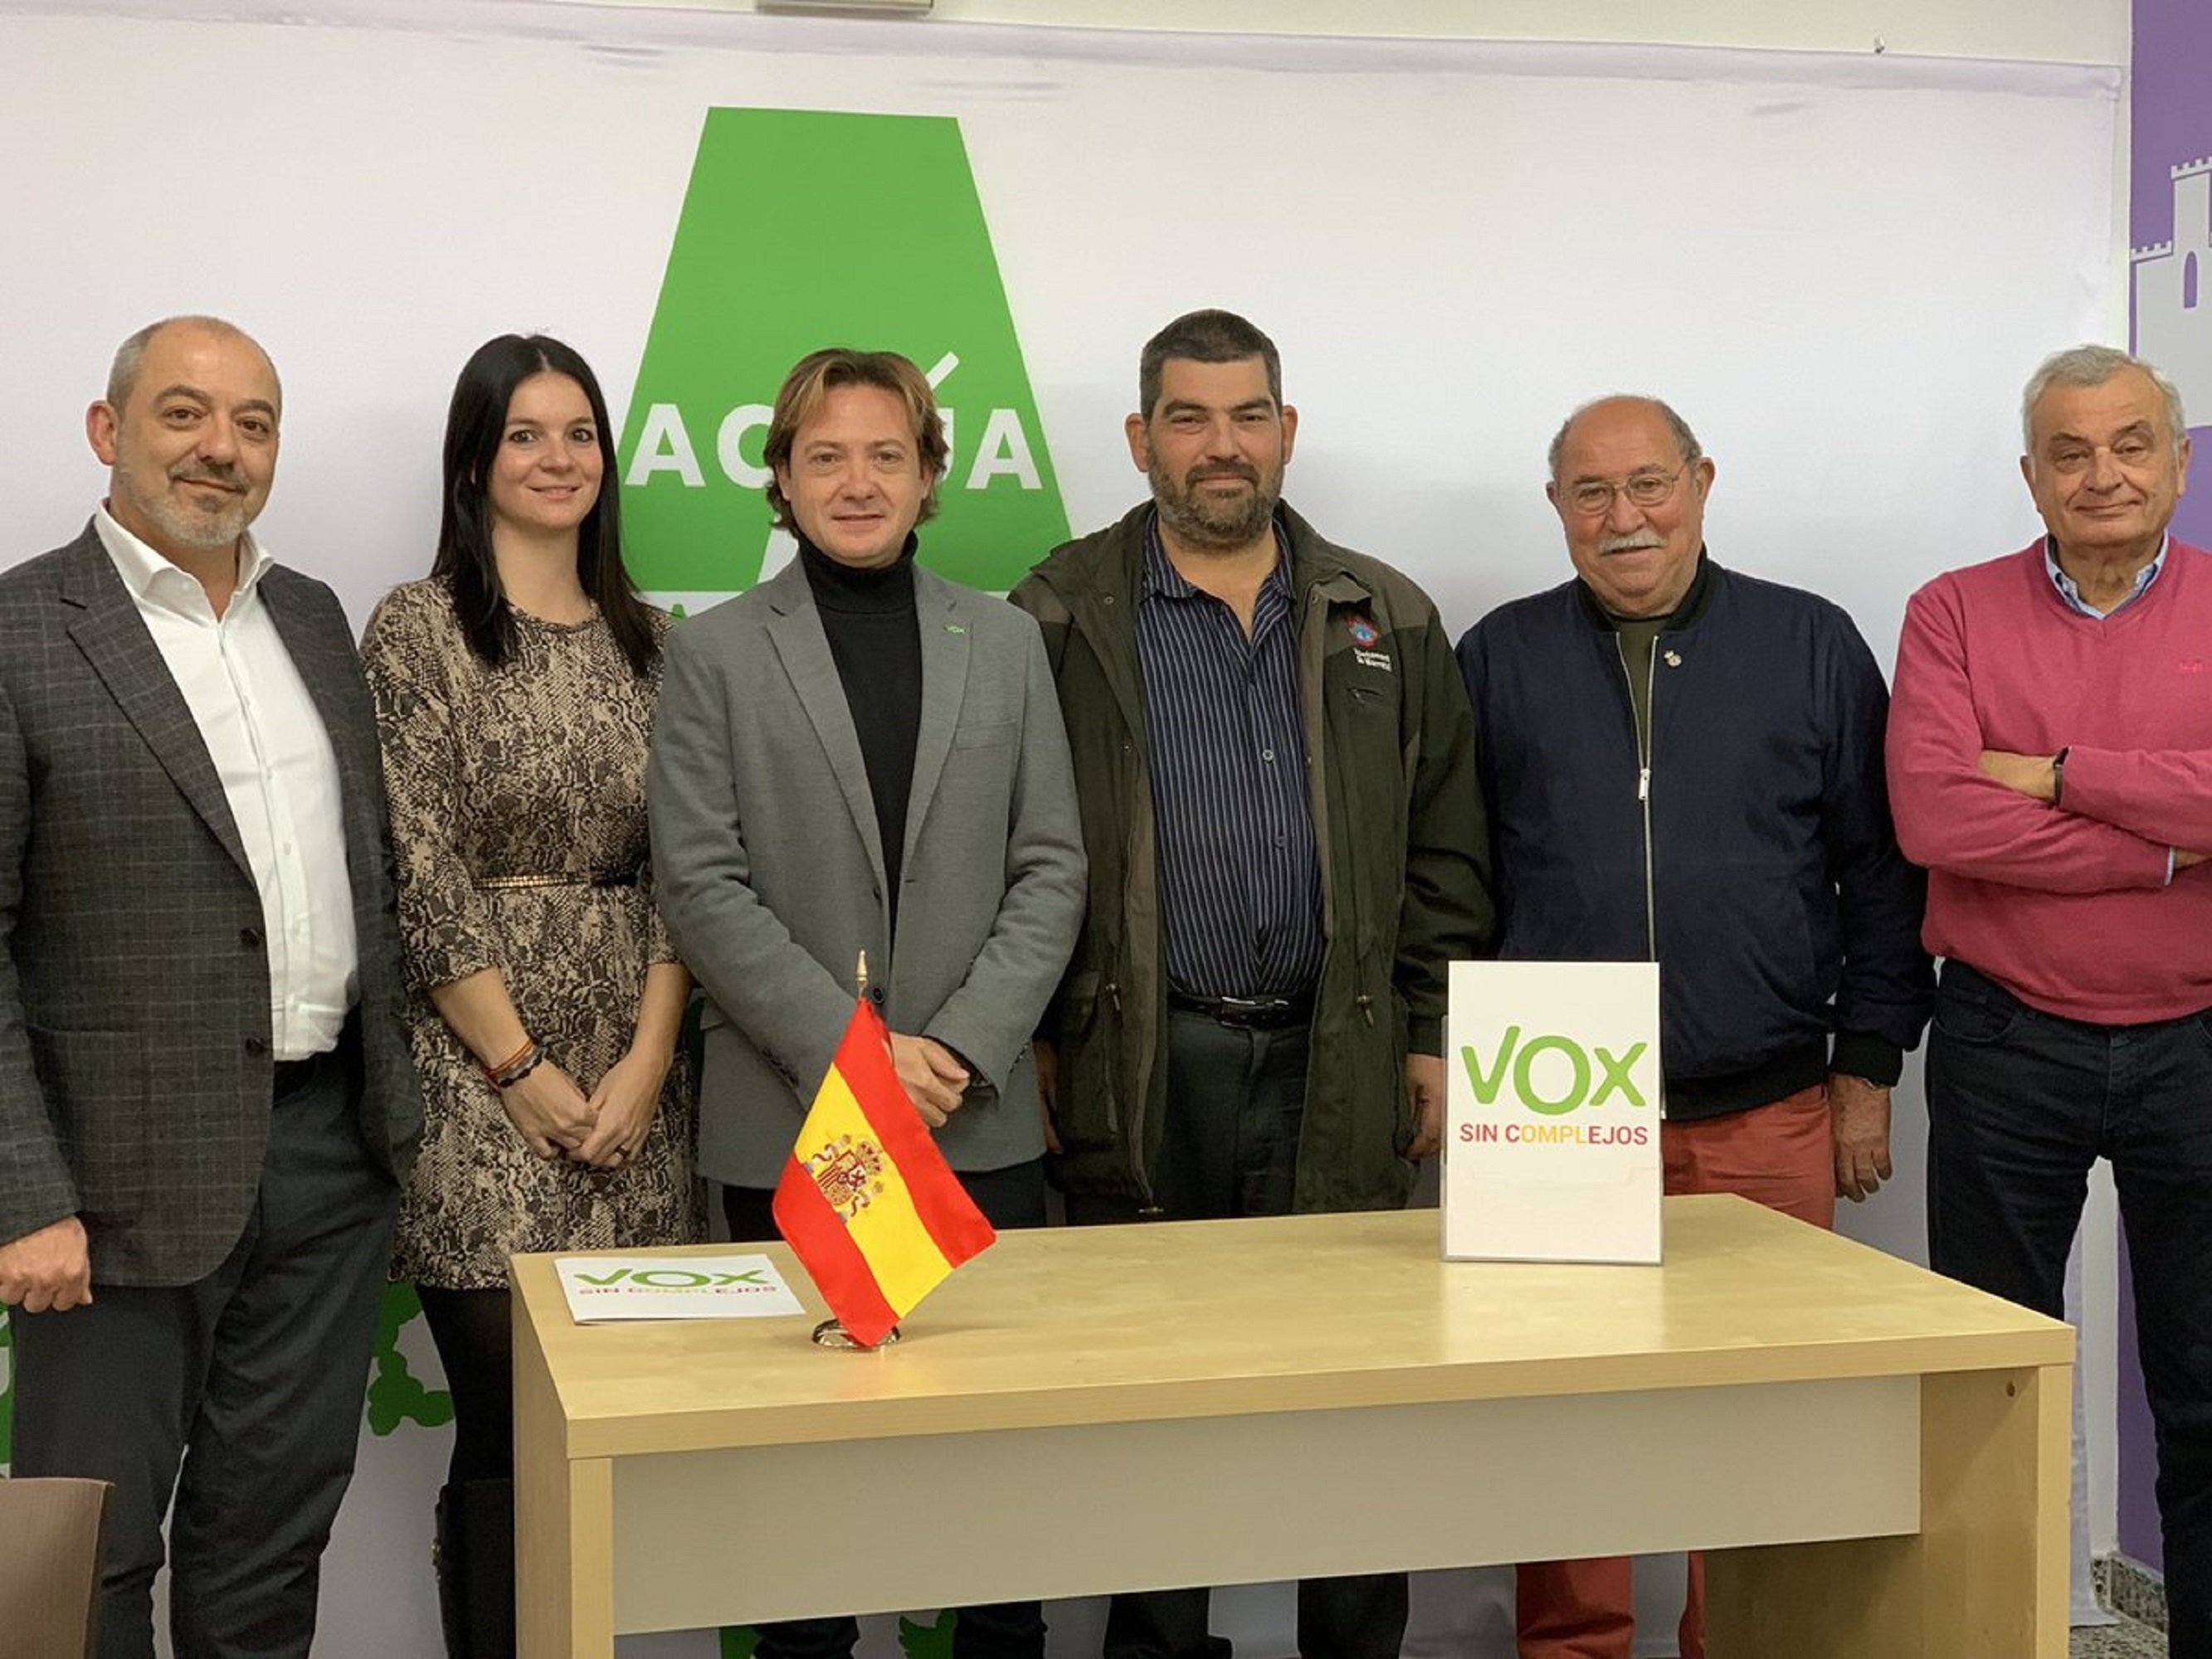 Vox fa un muntatge amb una falsa agressió a tres noies de Mallorca